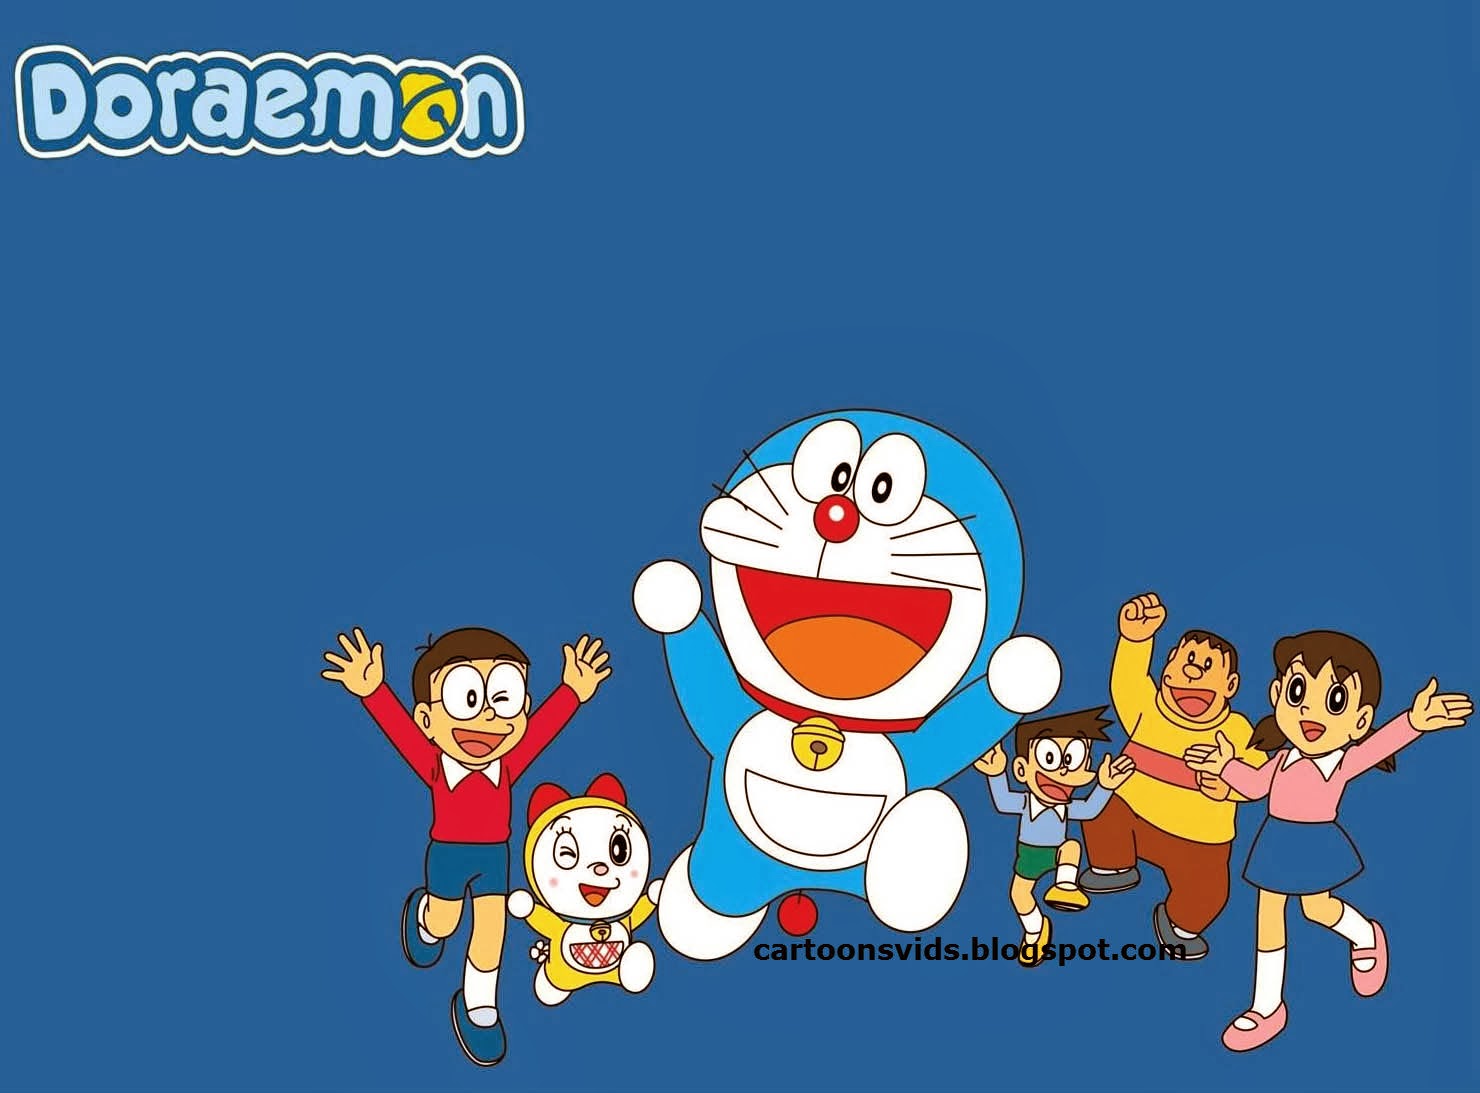 Doraemon 1st Full Episode In Hindi